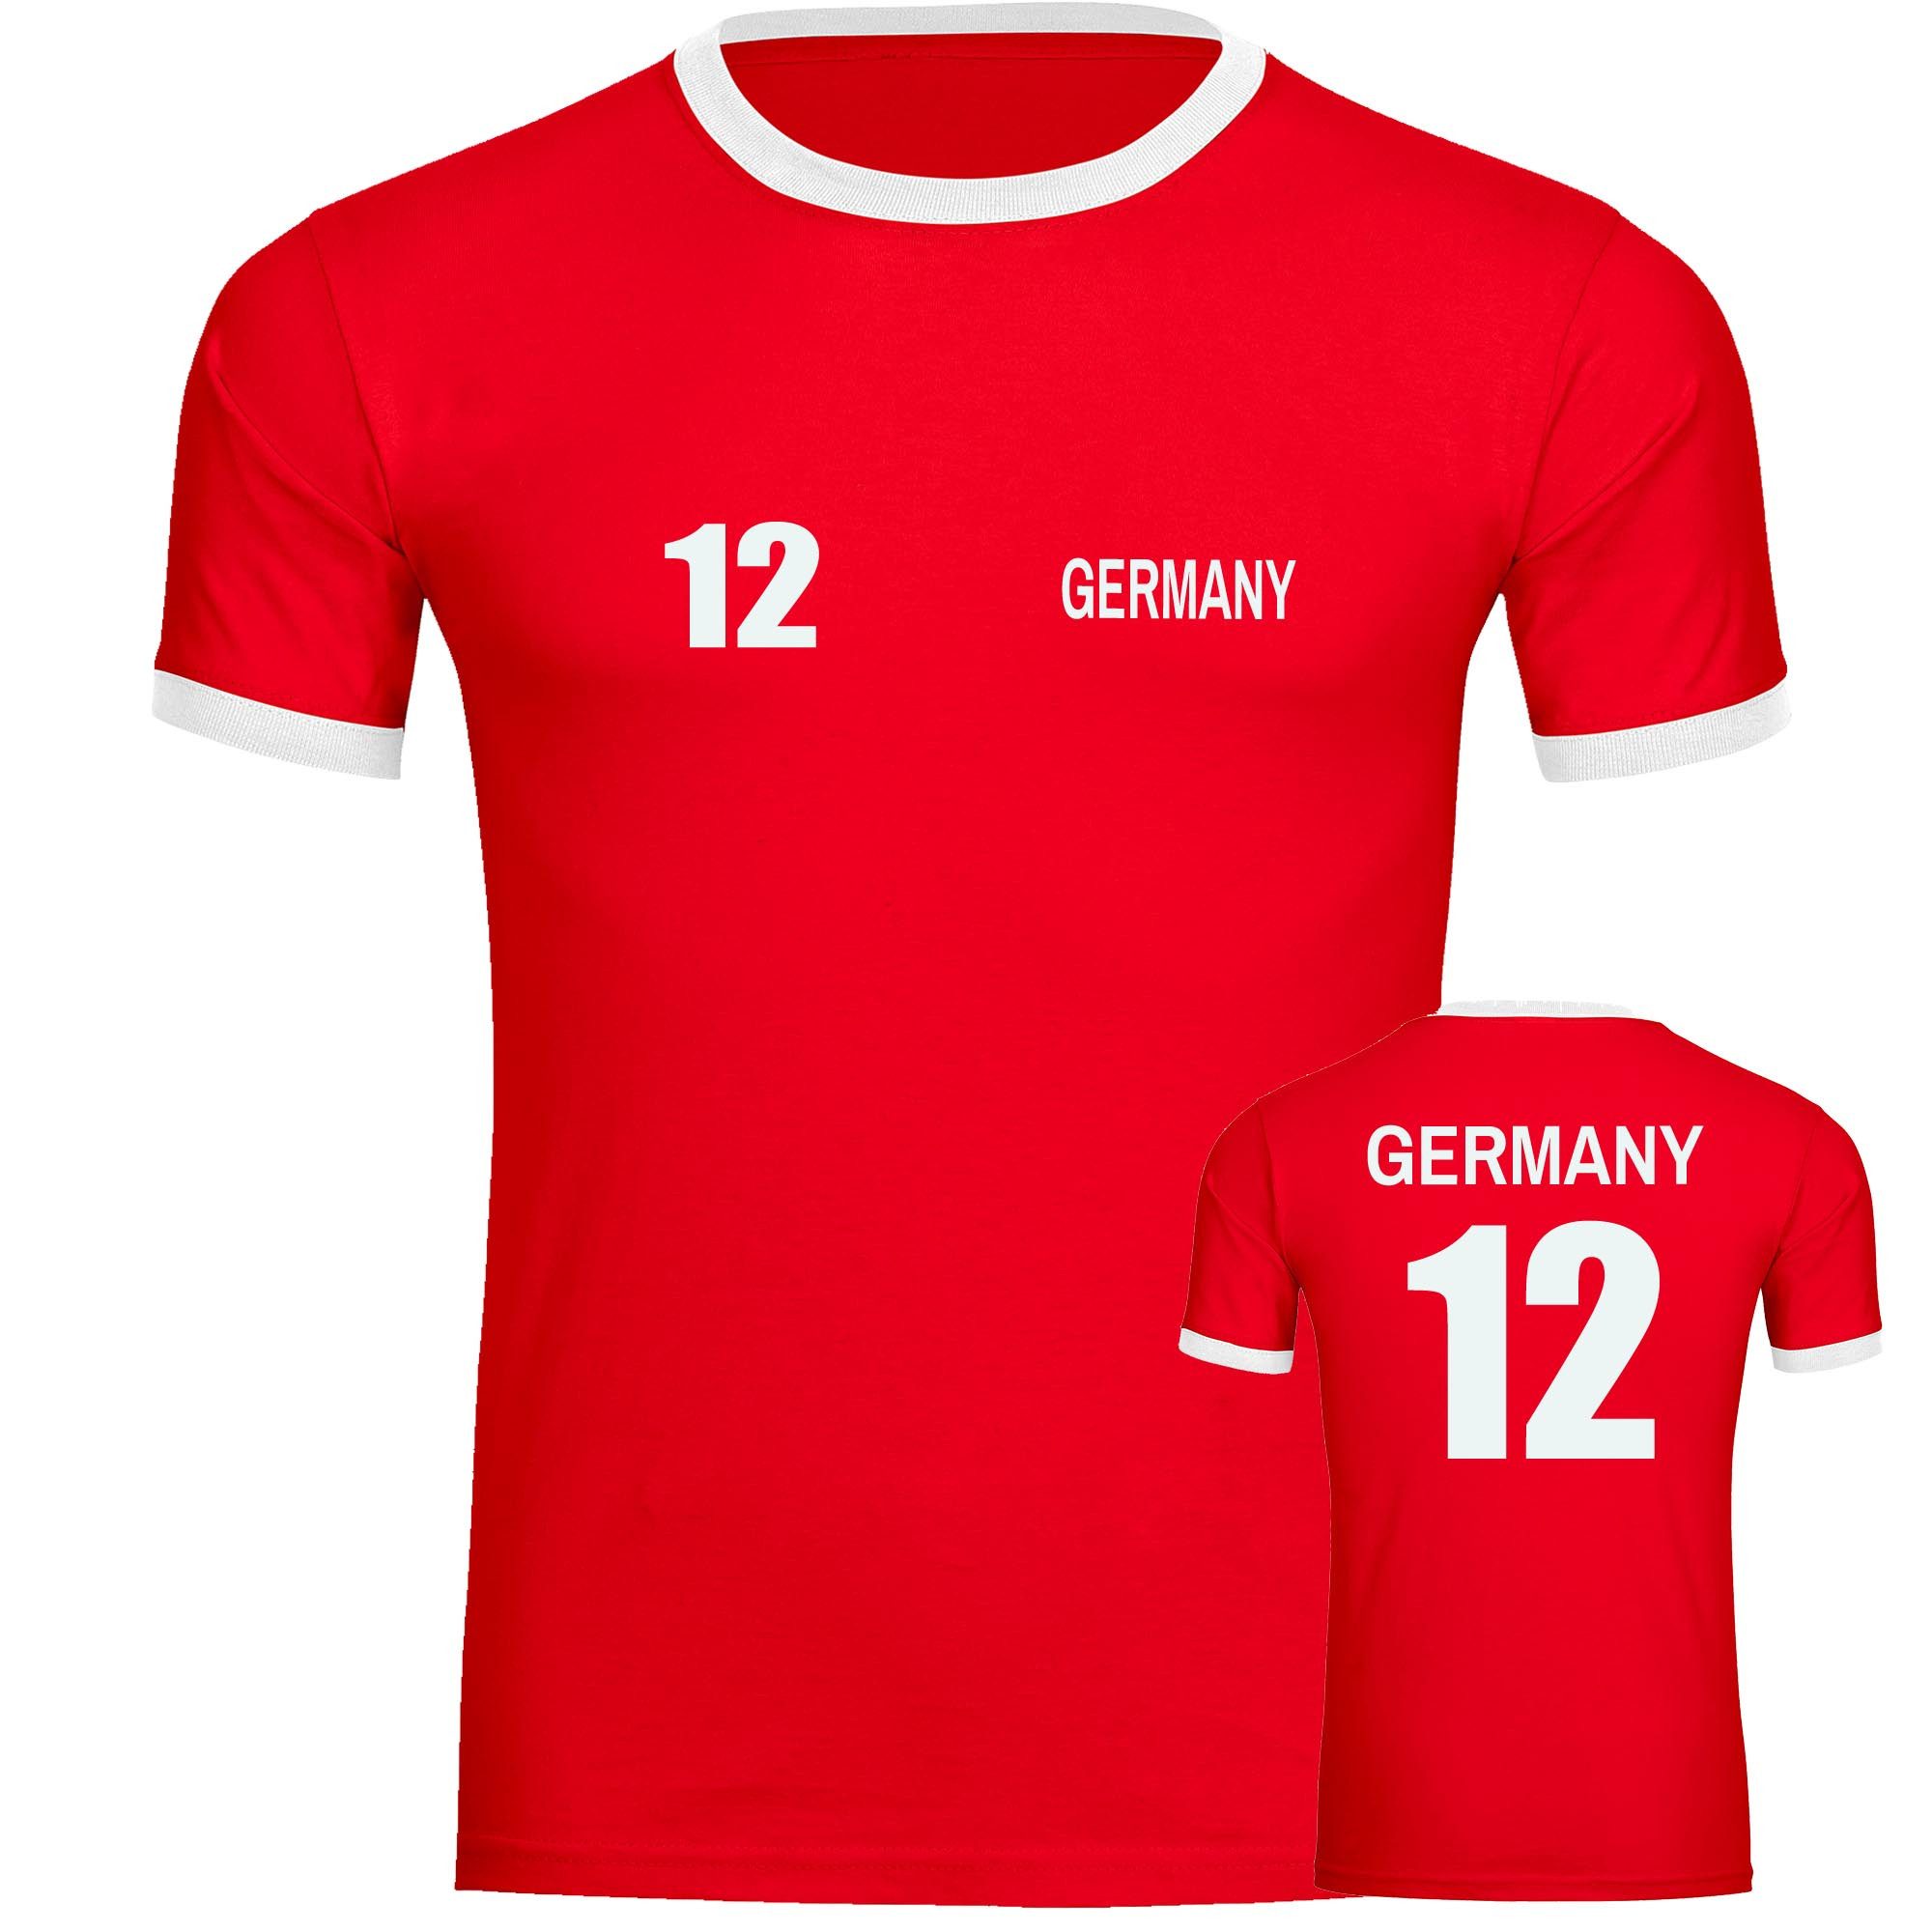 multifanshop T-Shirt Kontrast Germany - Trikot 12 - Männer